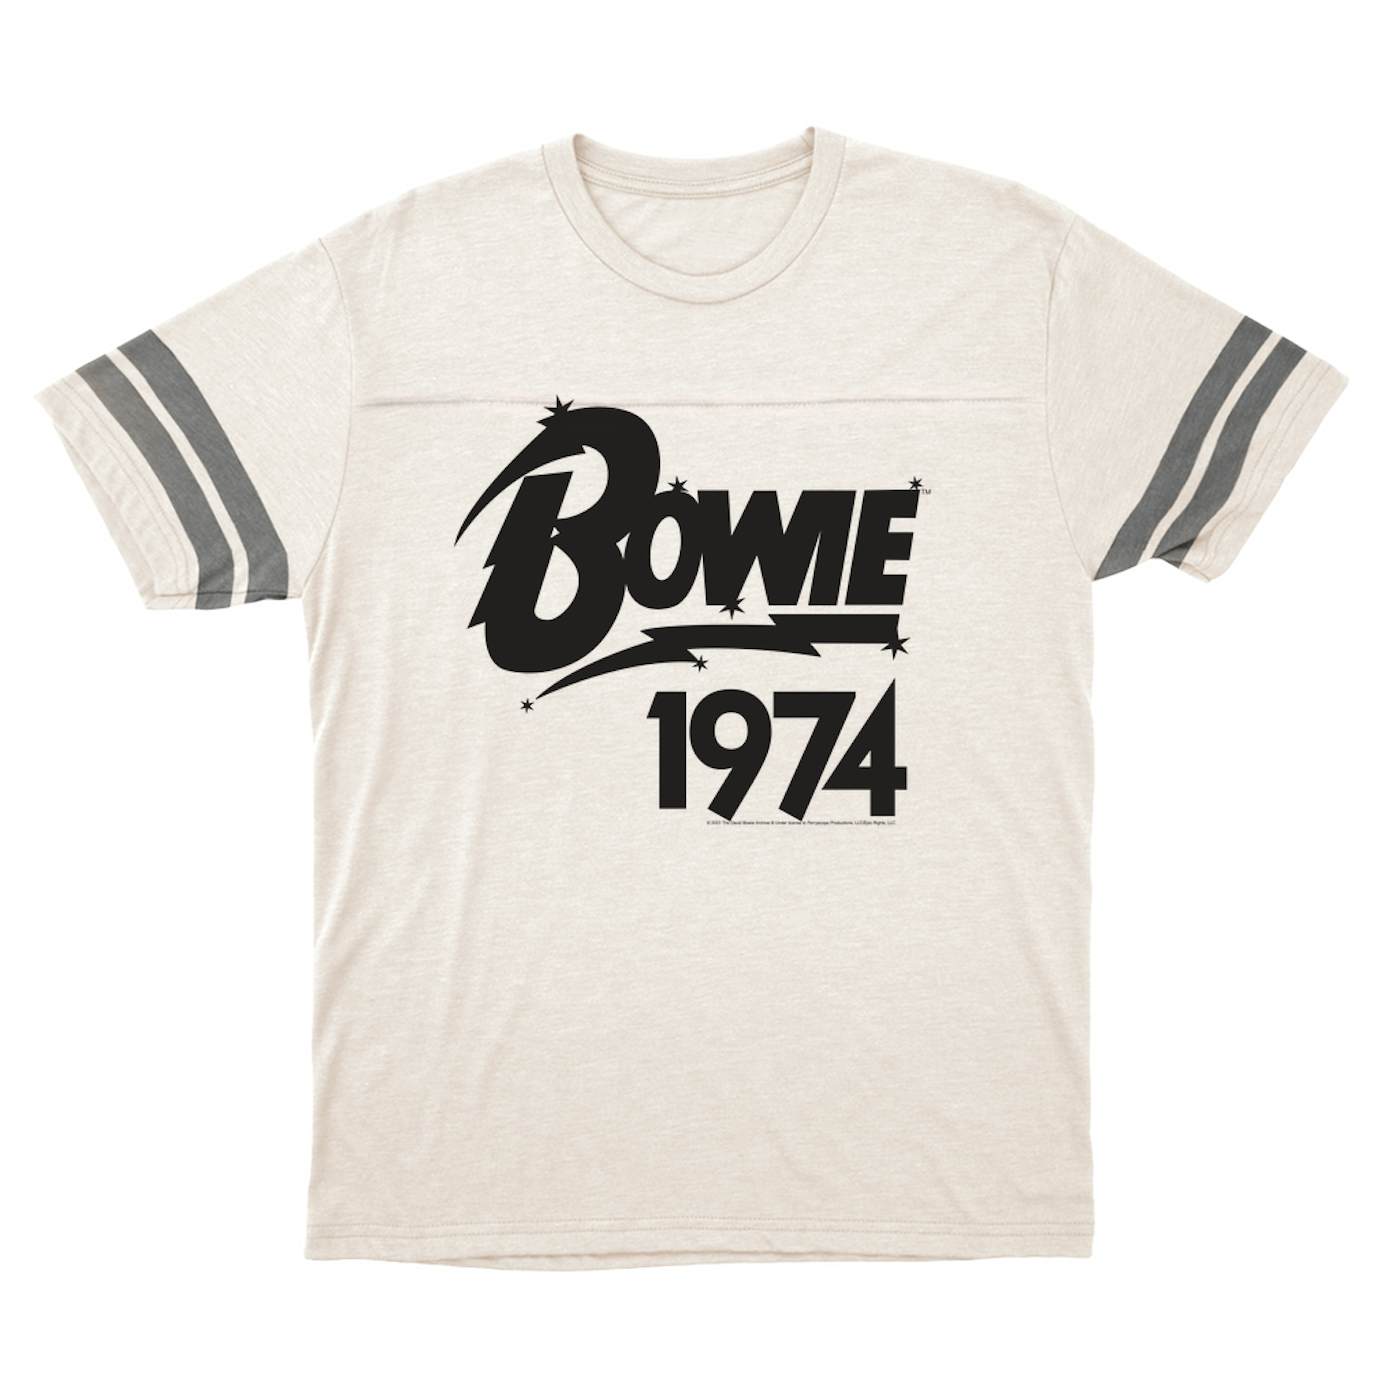 David Bowie T-Shirt | Bowie 1974 Logo (Merchbar Exclusive) David Bowie Football Shirt